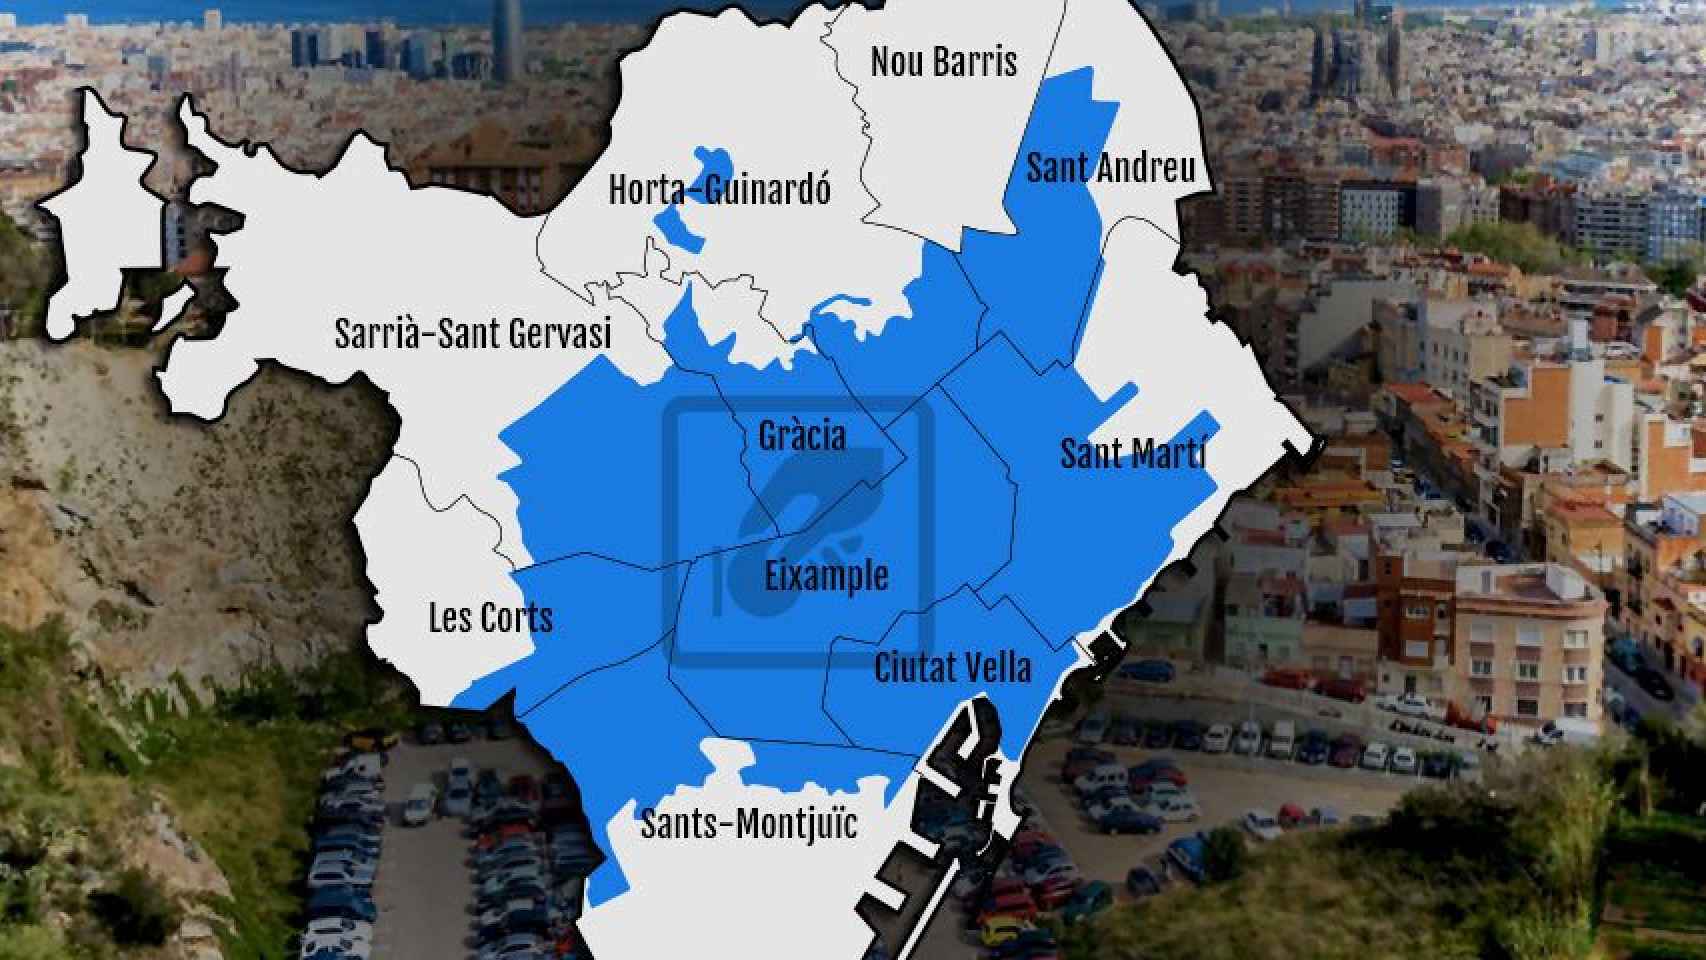 Mapa de Barcelona con las zonas de aparcamiento de pago destacadas